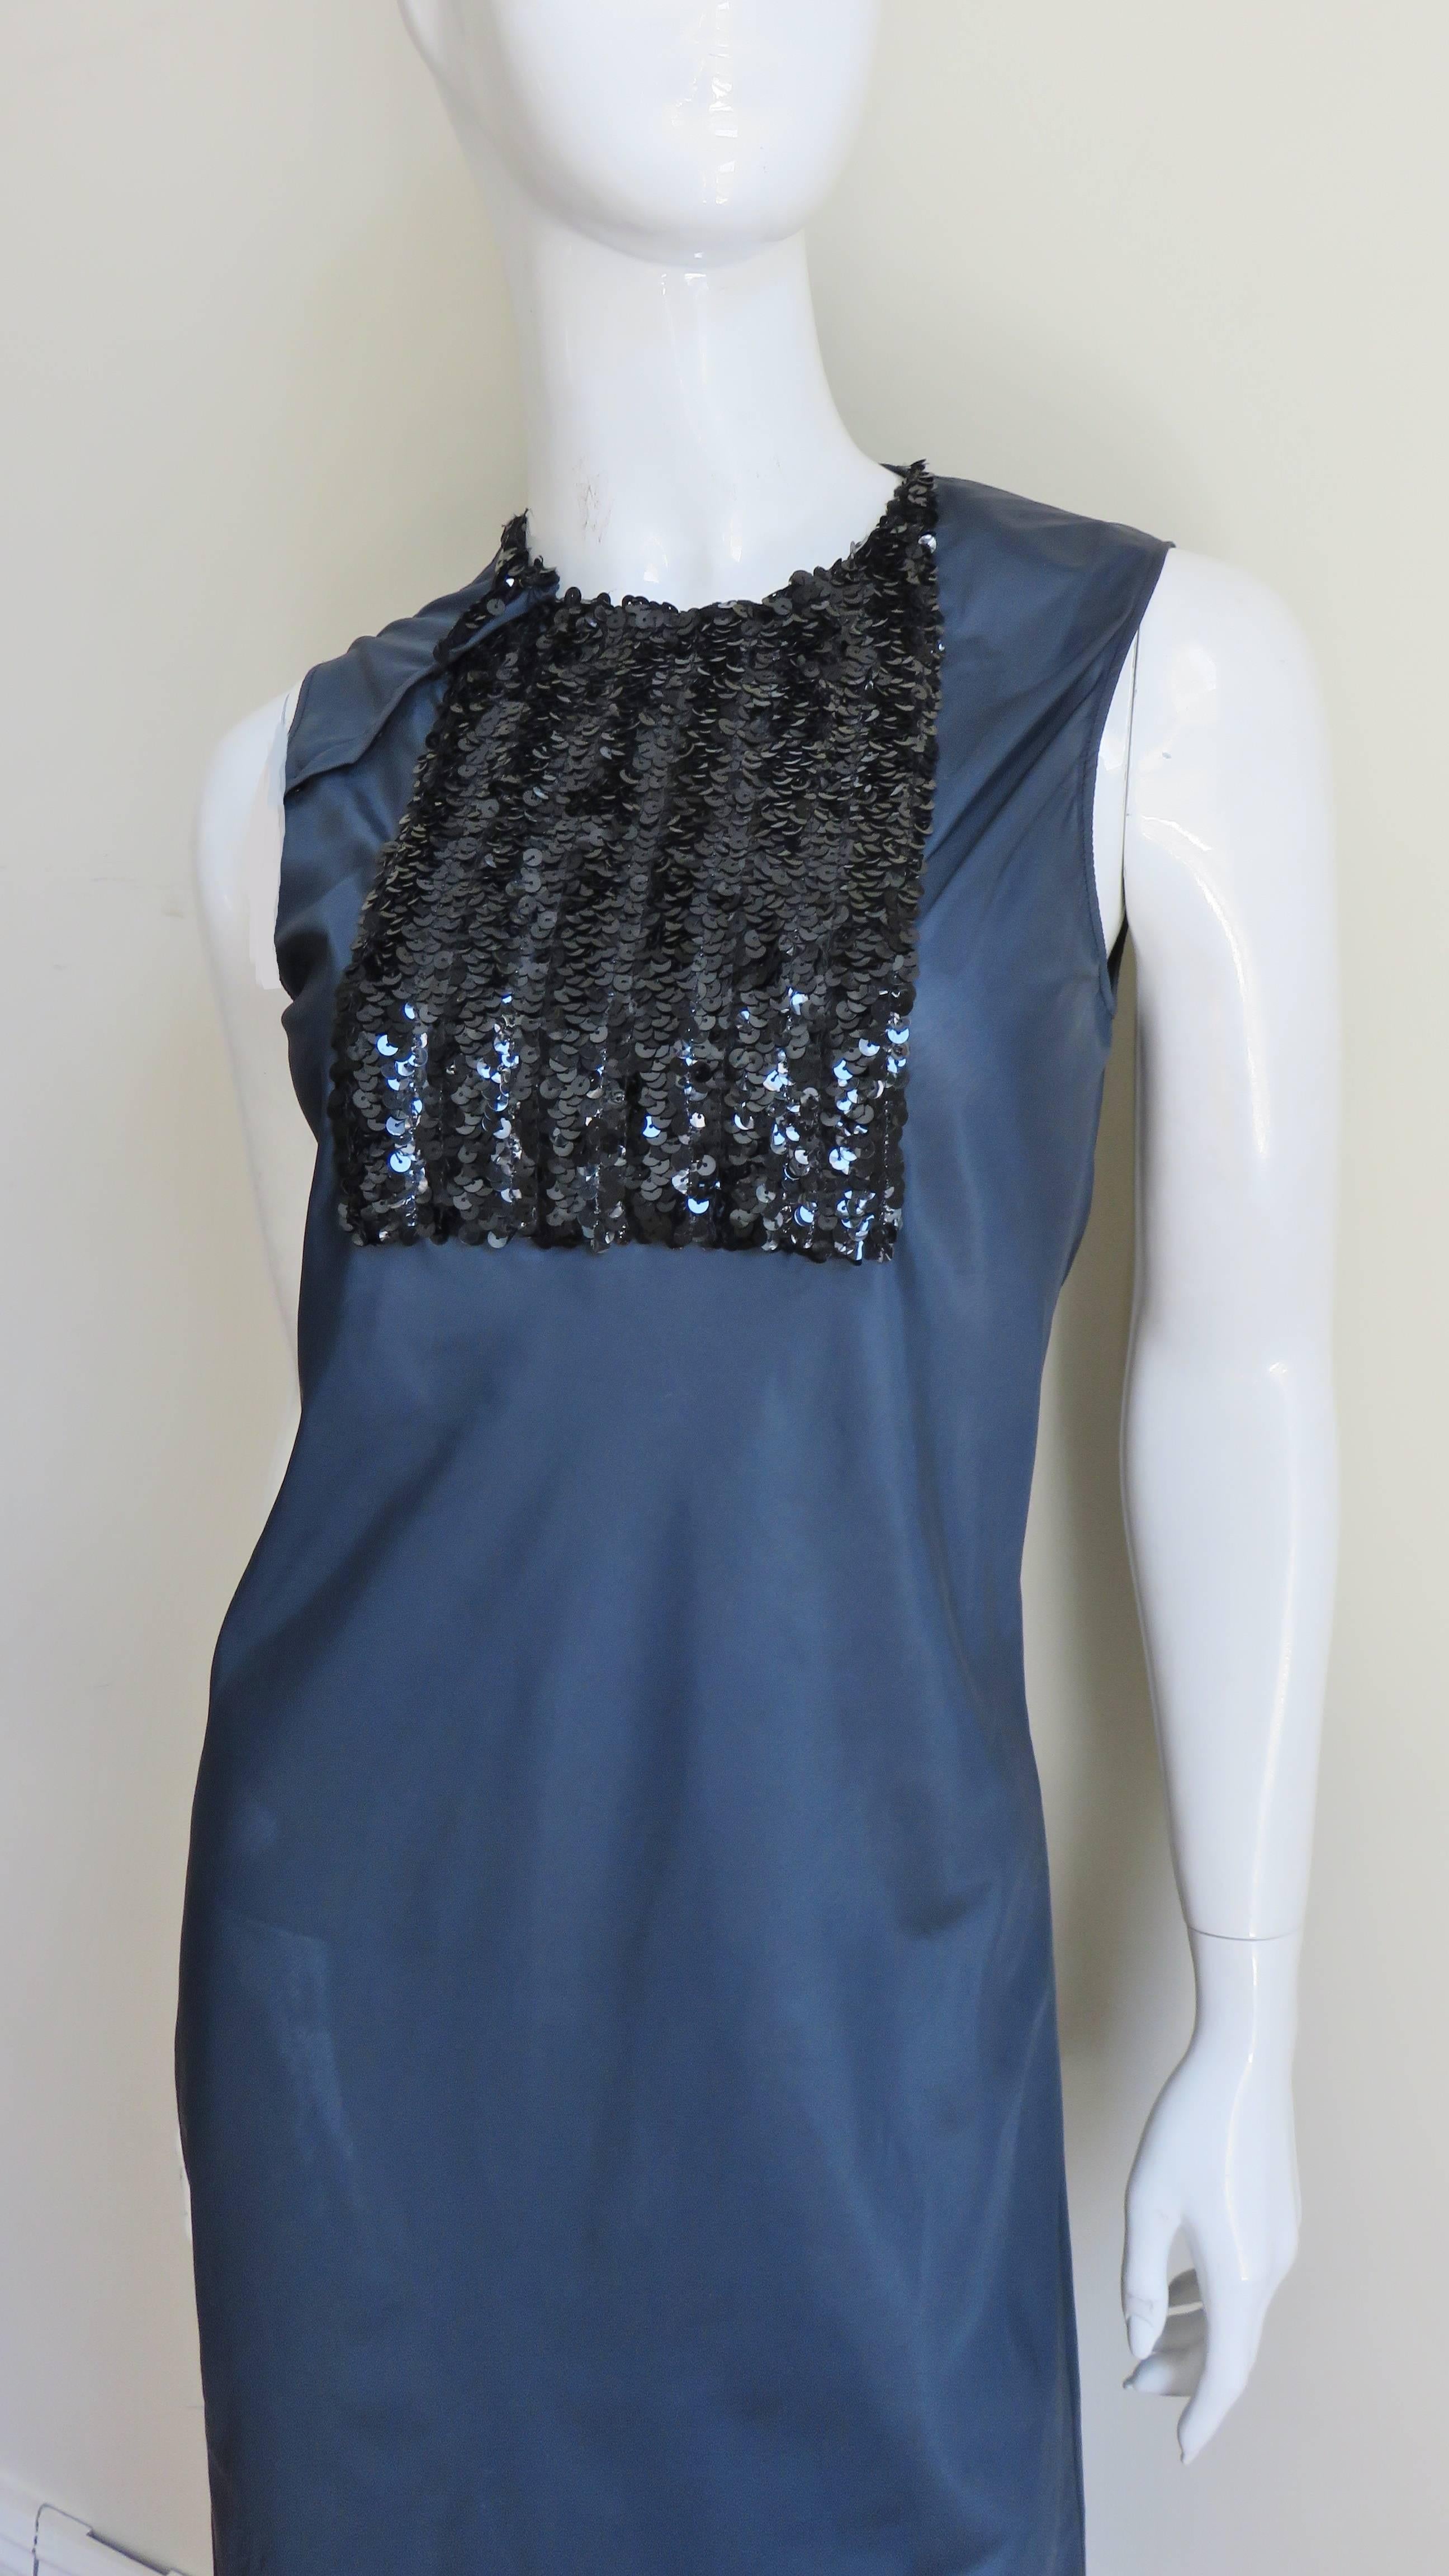 Ein tolles navyblaues Kleid von Helmut Lang.  Es ist ein einfaches Mieder mit Rundhalsausschnitt und einer quadratischen, mit schwarzen Pailletten besetzten Frontblende, die vom Halsausschnitt bis zur Brust reicht.  Der untere Teil der Schürze hat